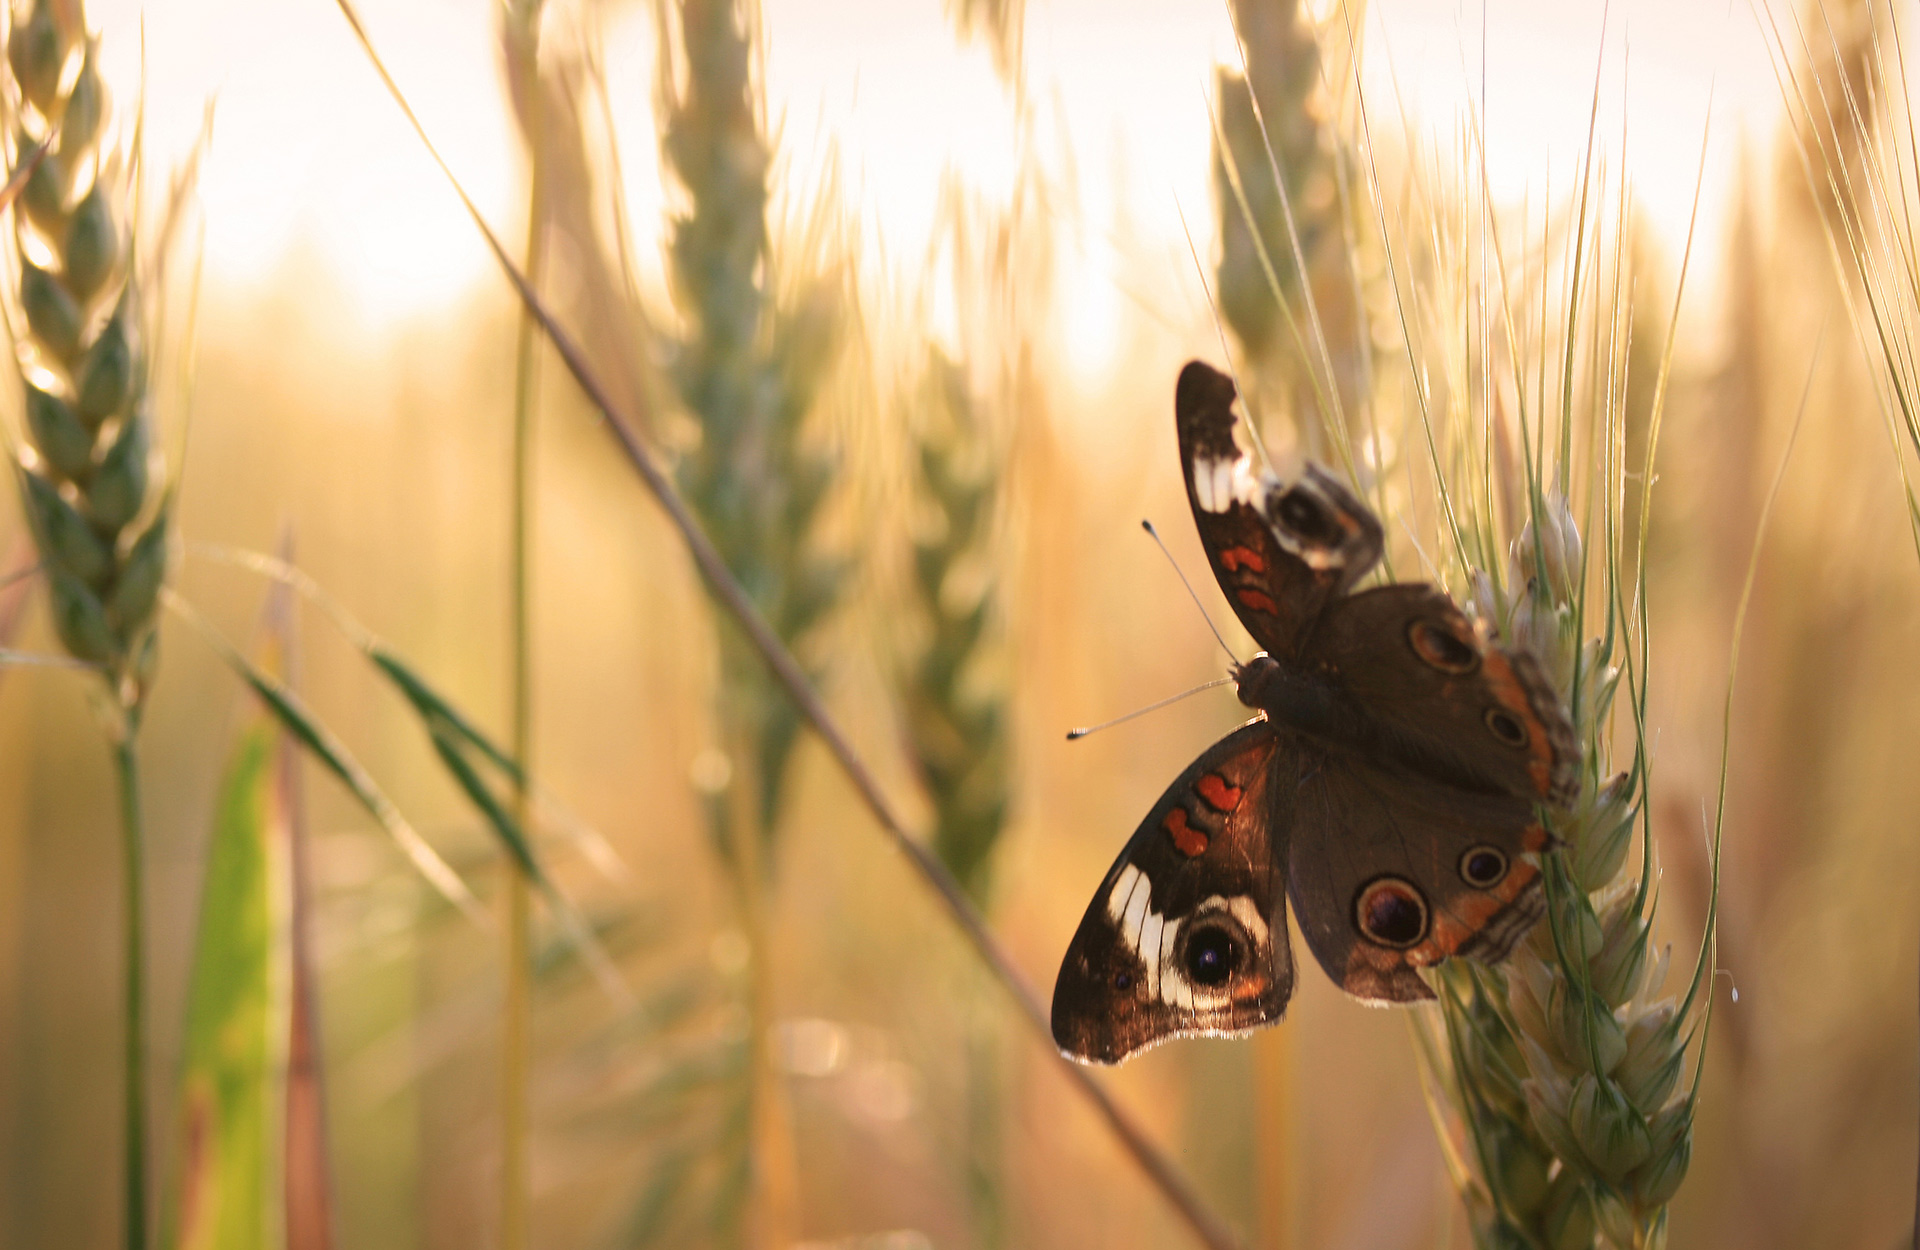 A butterfly in wheat